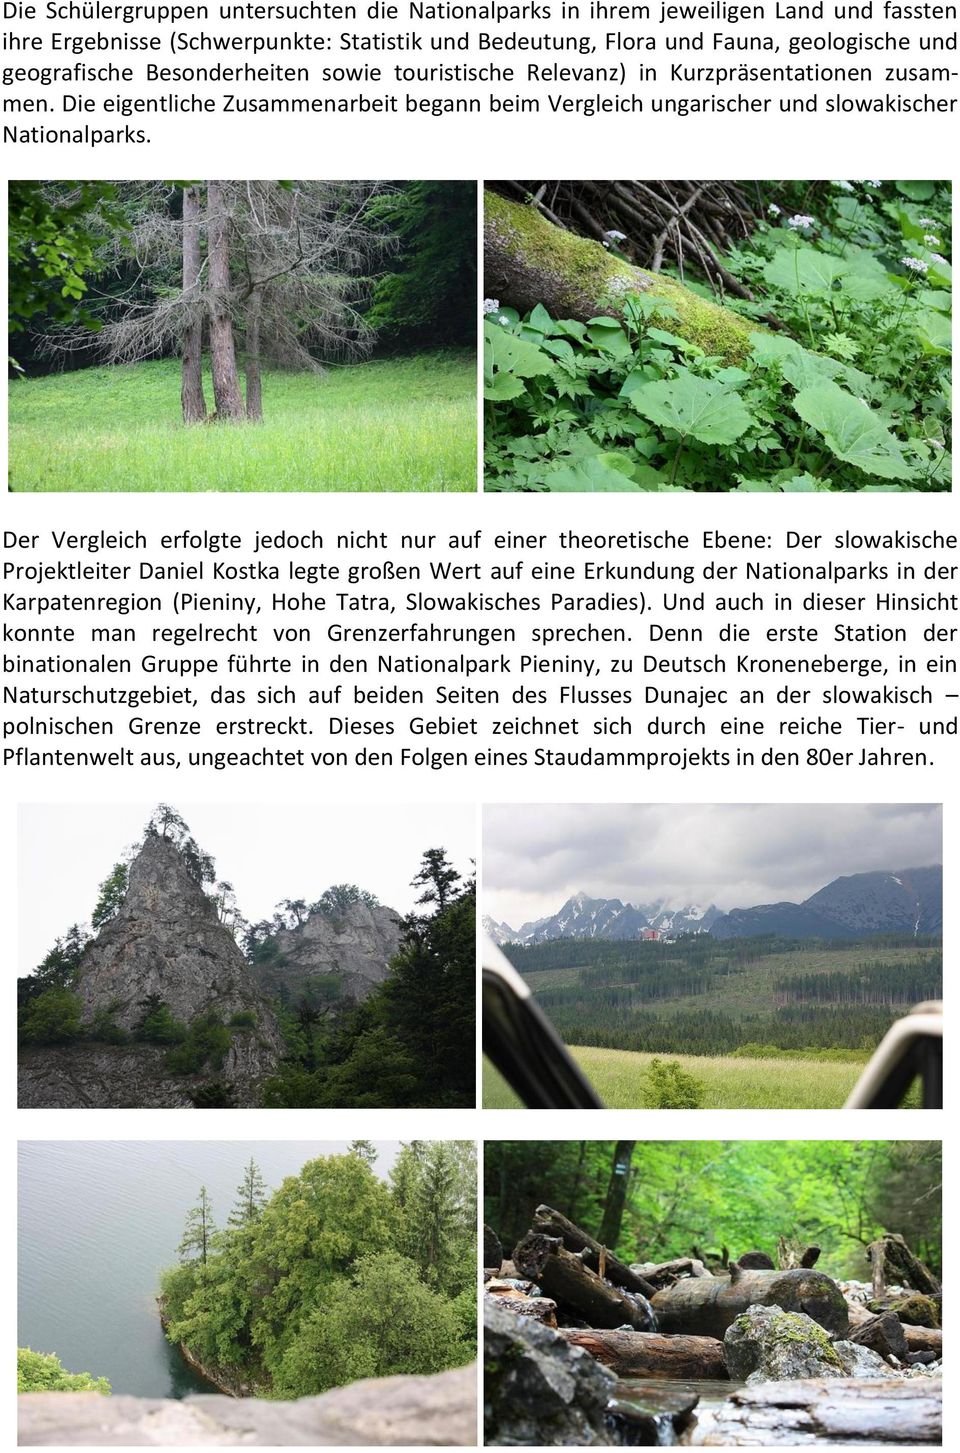 Der Vergleich erfolgte jedoch nicht nur auf einer theoretische Ebene: Der slowakische Projektleiter Daniel Kostka legte großen Wert auf eine Erkundung der Nationalparks in der Karpatenregion